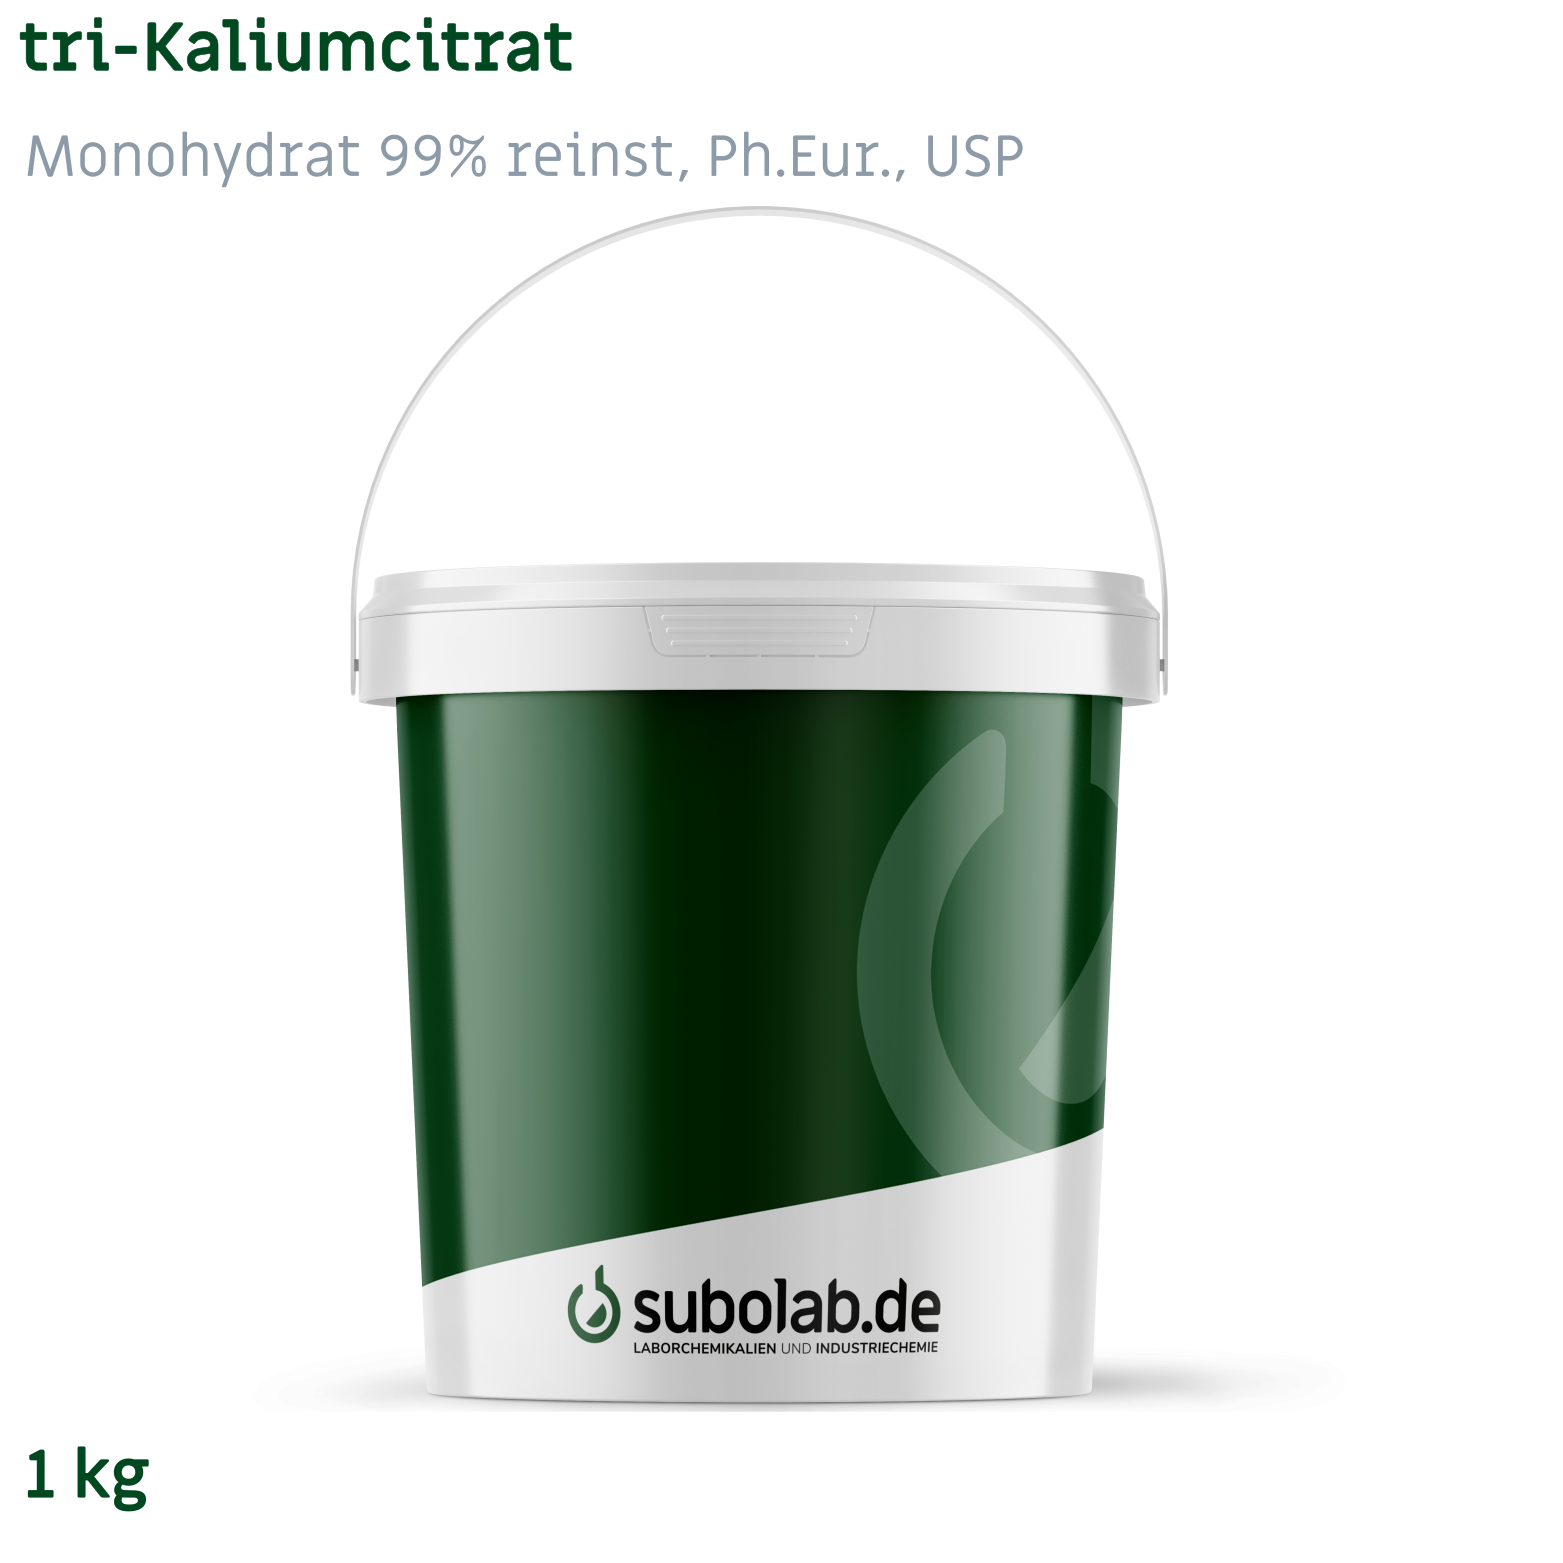 Bild von tri-Kaliumcitrat - Monohydrat 99% reinst, Ph.Eur., USP (1 kg)